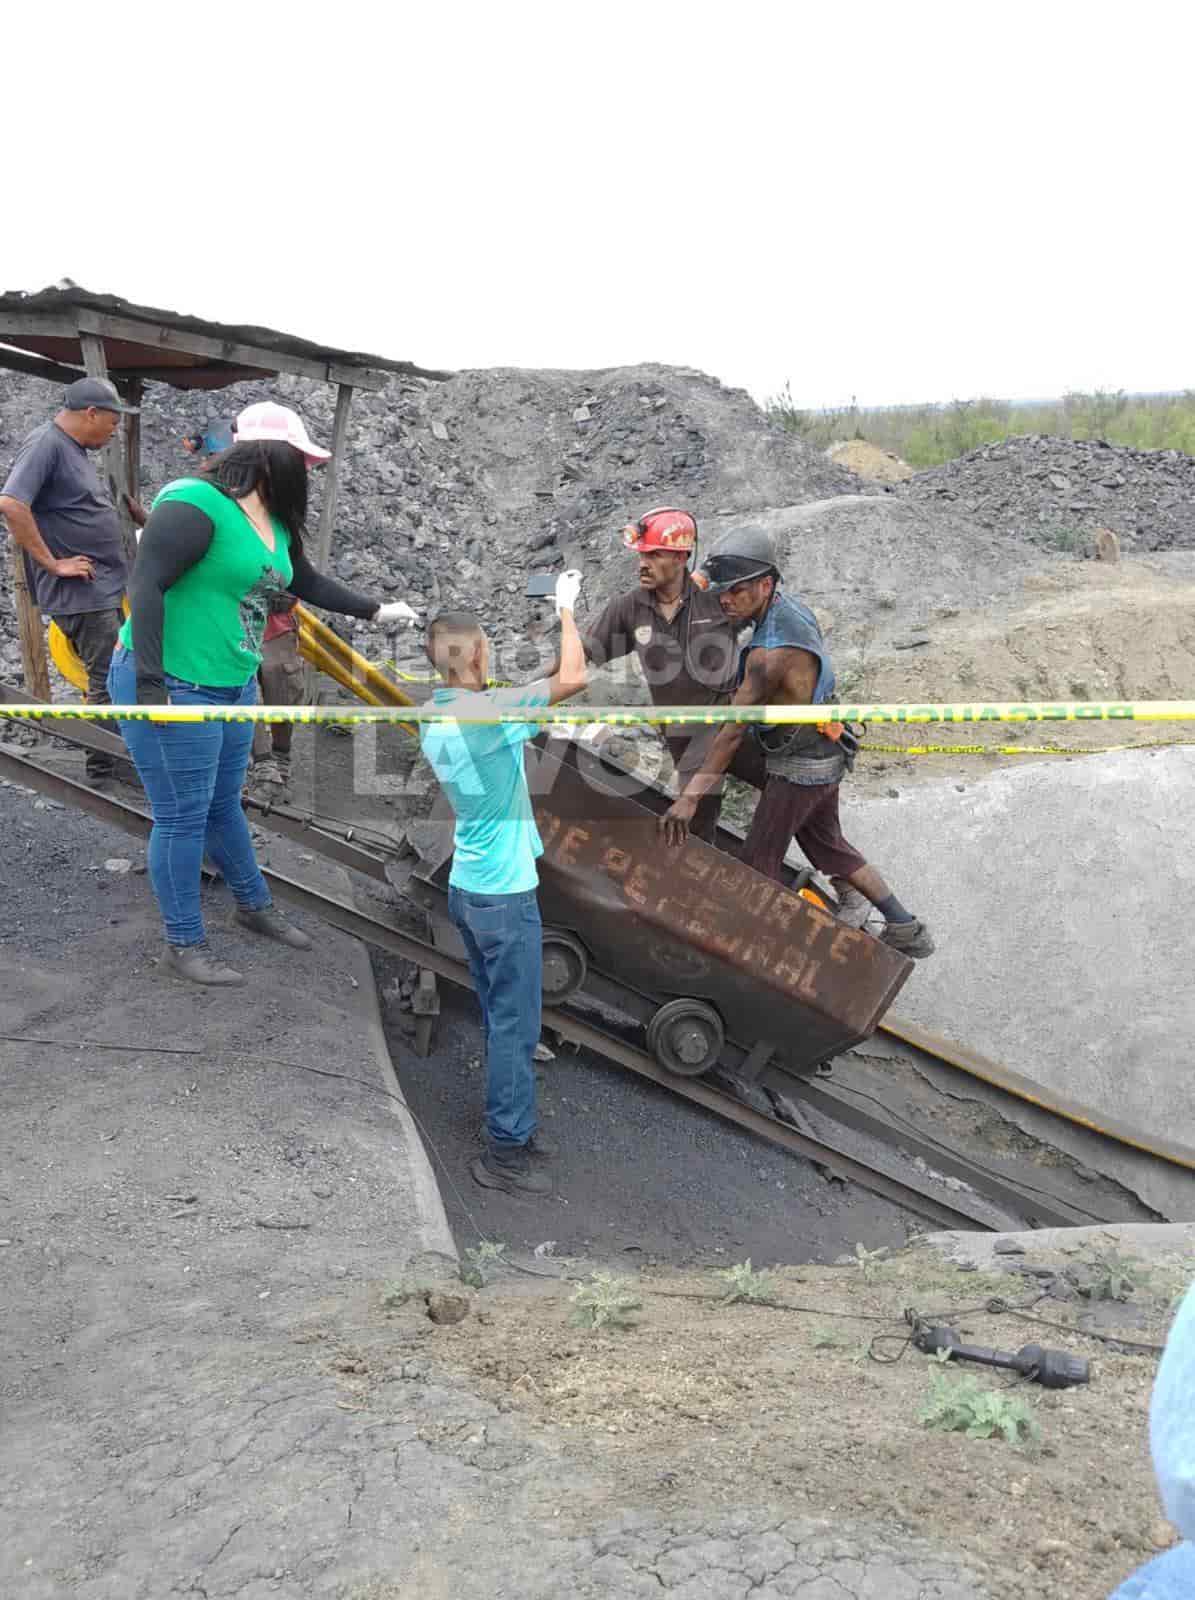 Recuperan cuerpo de minero atrapado en mina Carkim